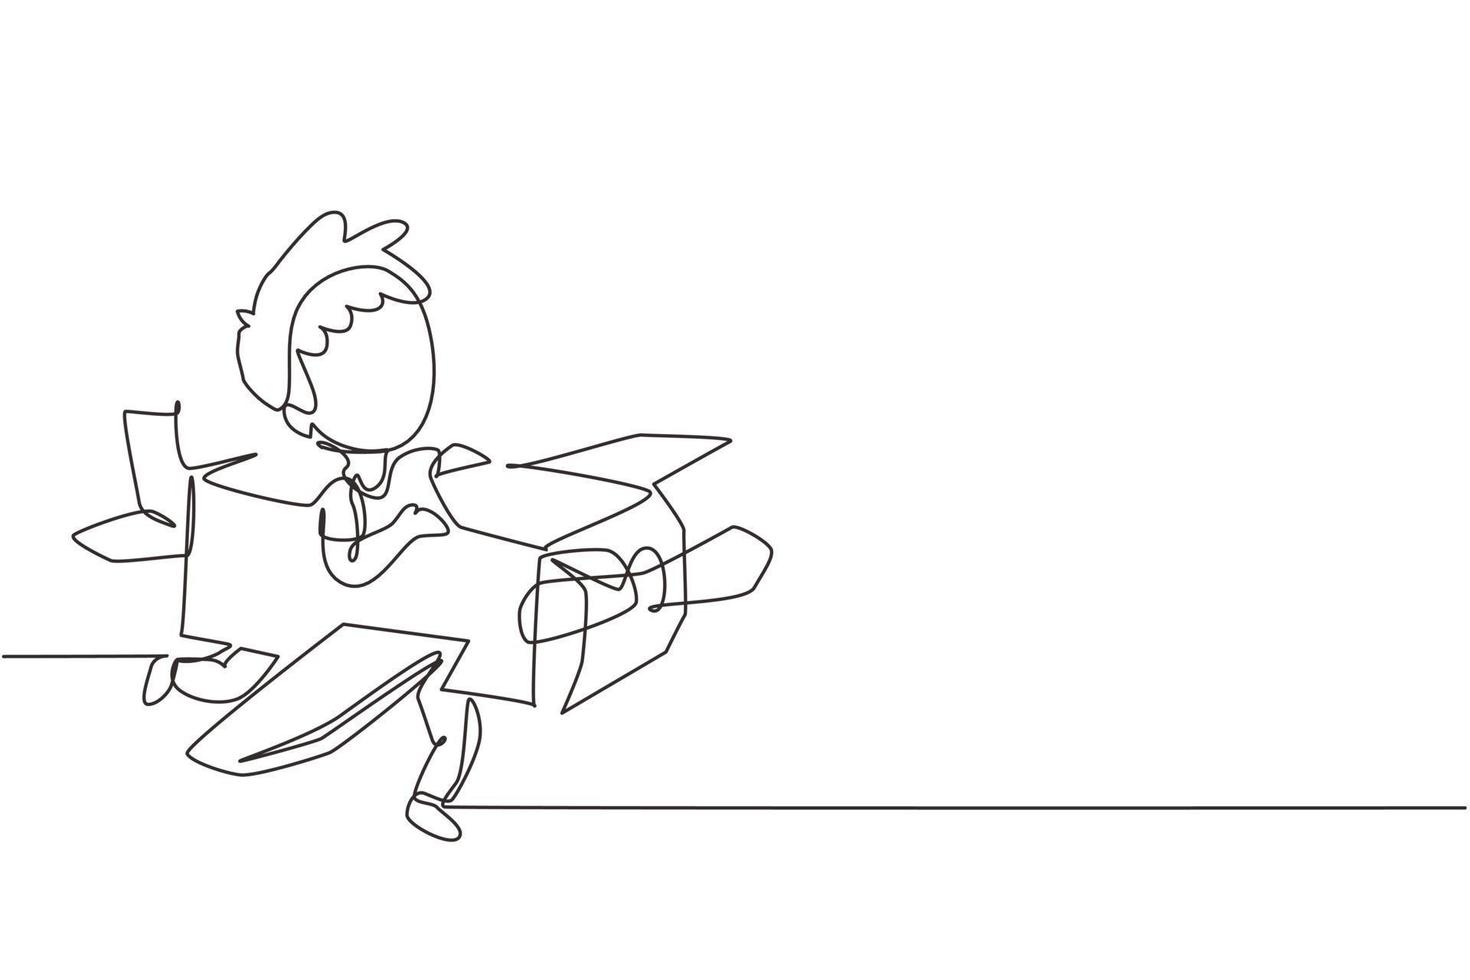 Single One Line Drawing kreativer Junge, der als Pilot mit Pappflugzeug spielt. glückliche Kinder, die ein handgefertigtes Flugzeug aus Pappe reiten. Flugzeug Spiel. moderne grafische vektorillustration des ununterbrochenen zeichnendesigns vektor